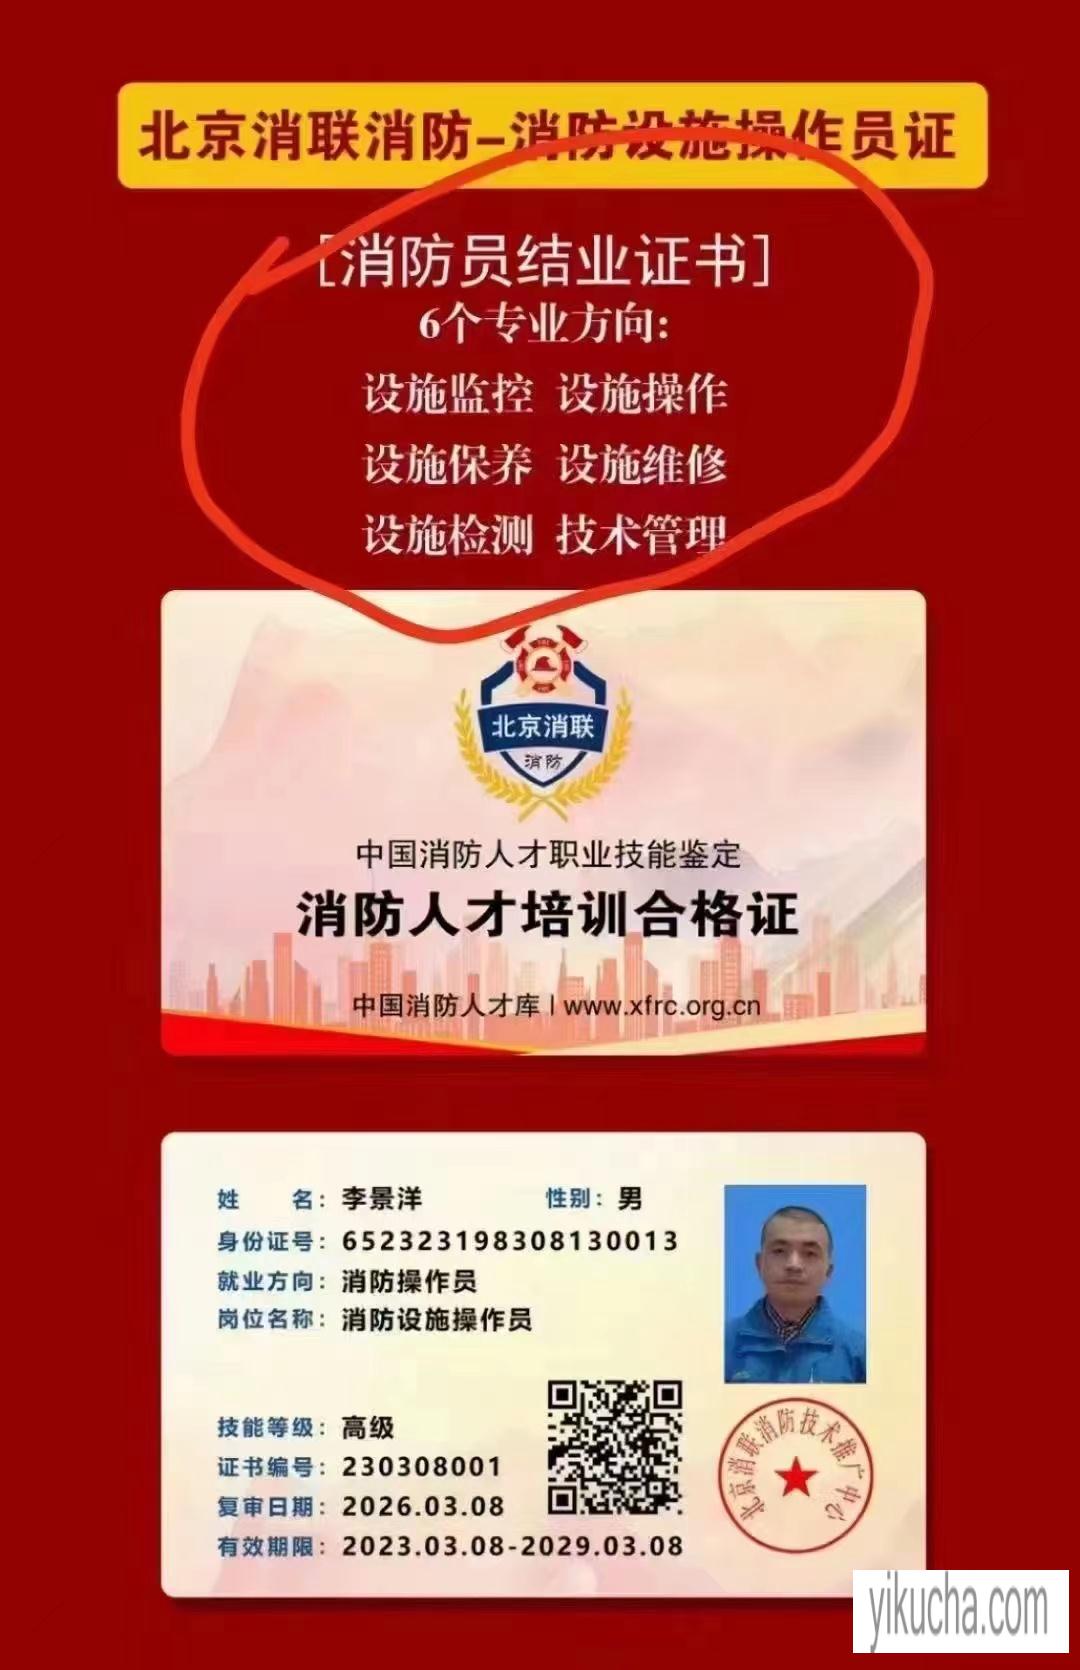 设施监控设施操作设施保养设施维修设施检测技术管理北京消联消防-图4